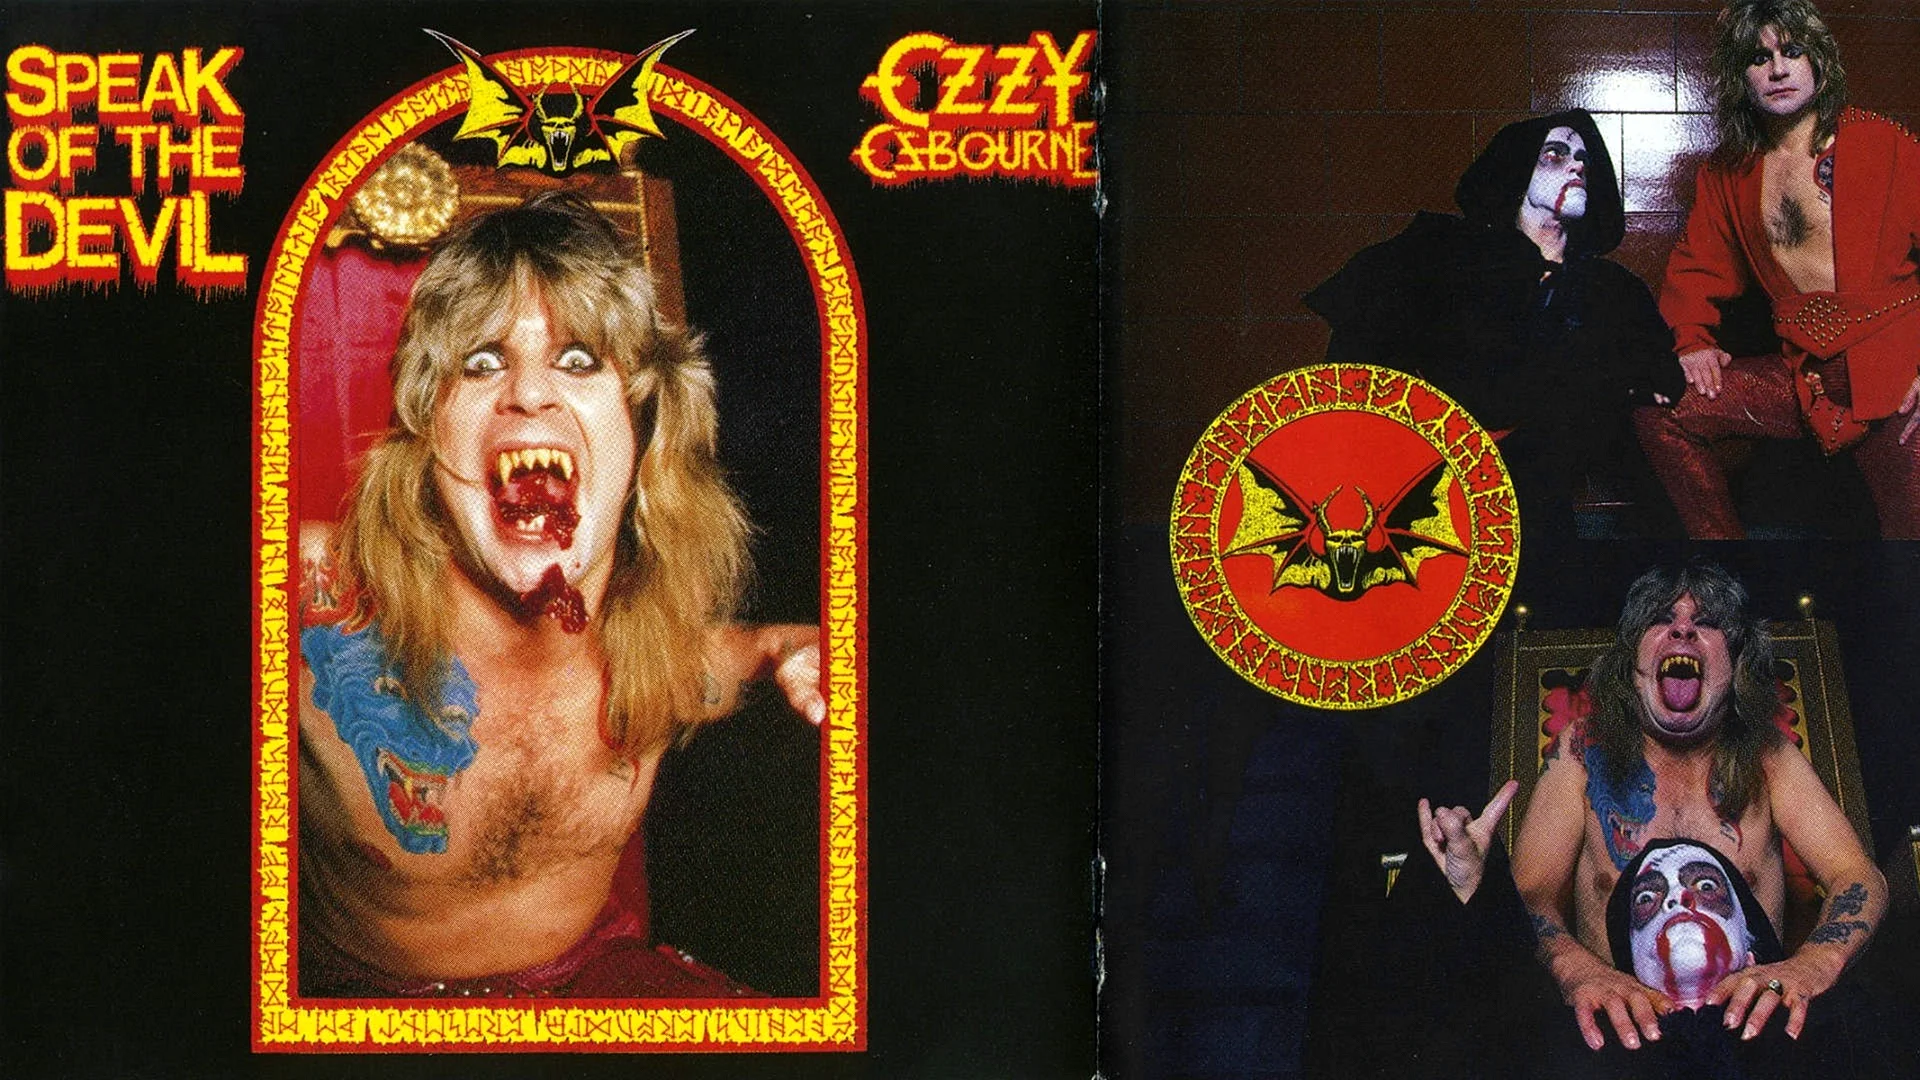 Osbourne Rock Singer Ozzy Heavy Metal Wallpaper